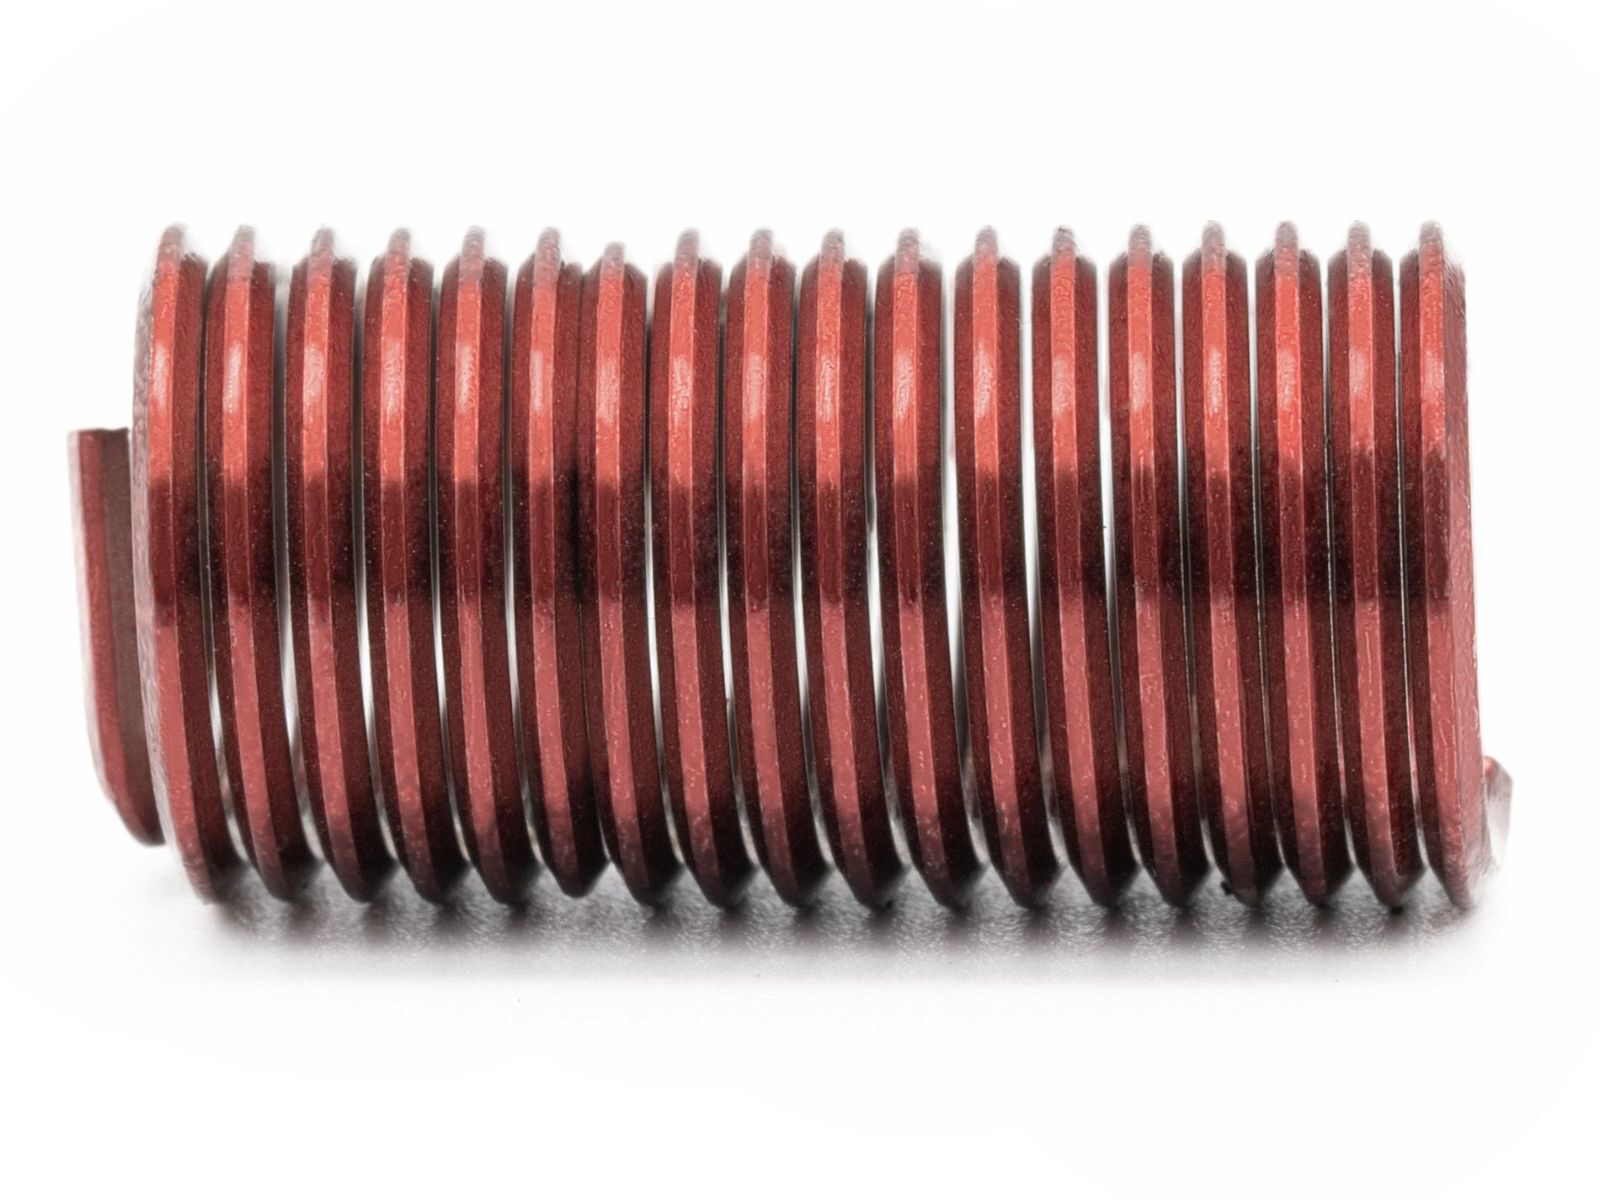 BaerCoil Wire Thread Inserts UNC 3/8 x 16 - 3.0 D (28.58 mm) - screw grip (screw locking) - 100 pcs.